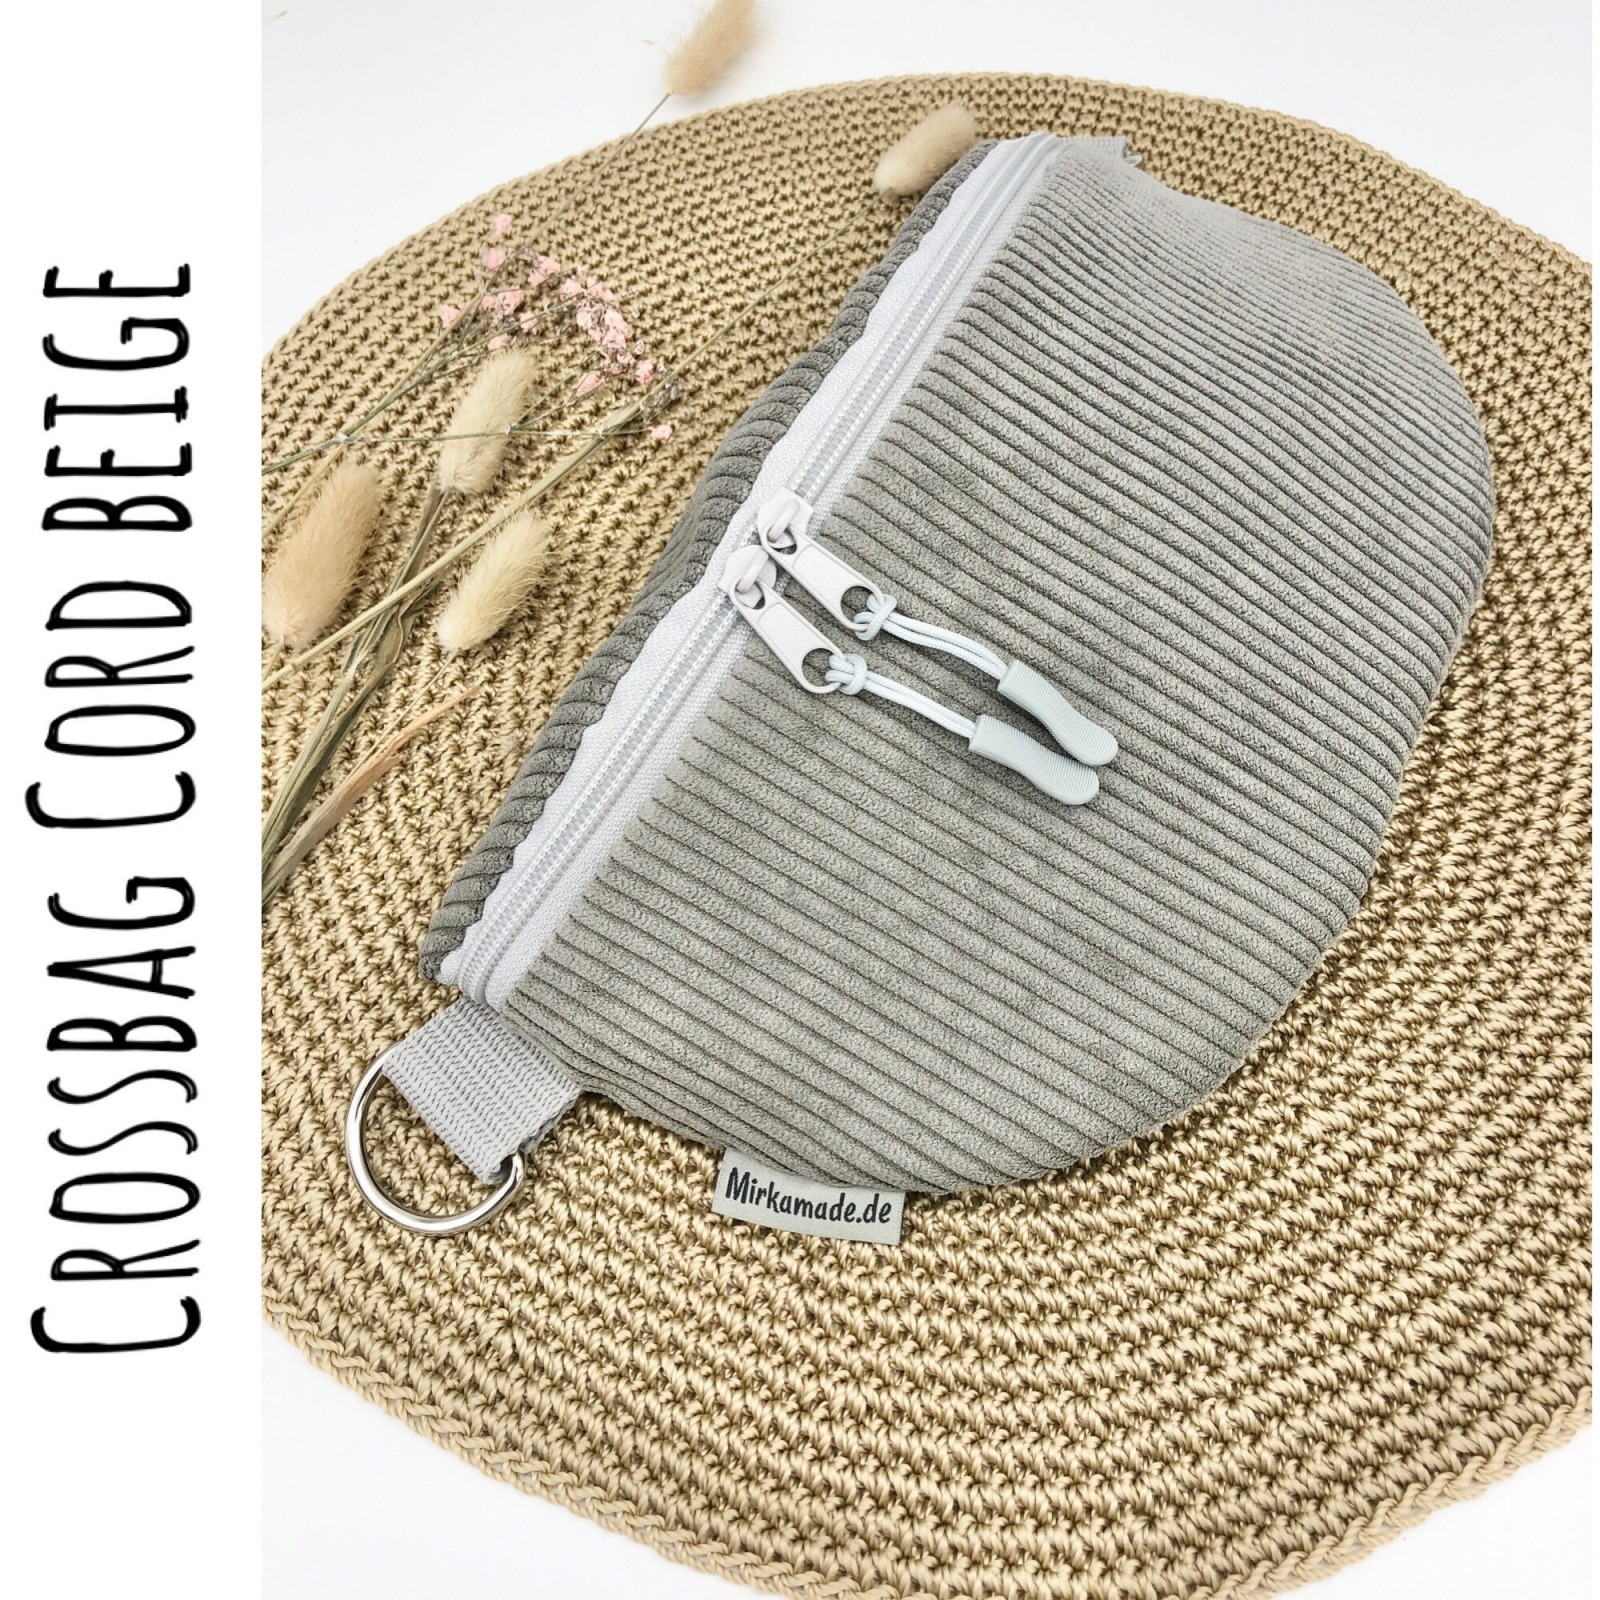 Bauchtasche, Crossbag Cord graubeige mit Leogurt in grau, Tasche Cord grau beige, Hipbag, leicht und